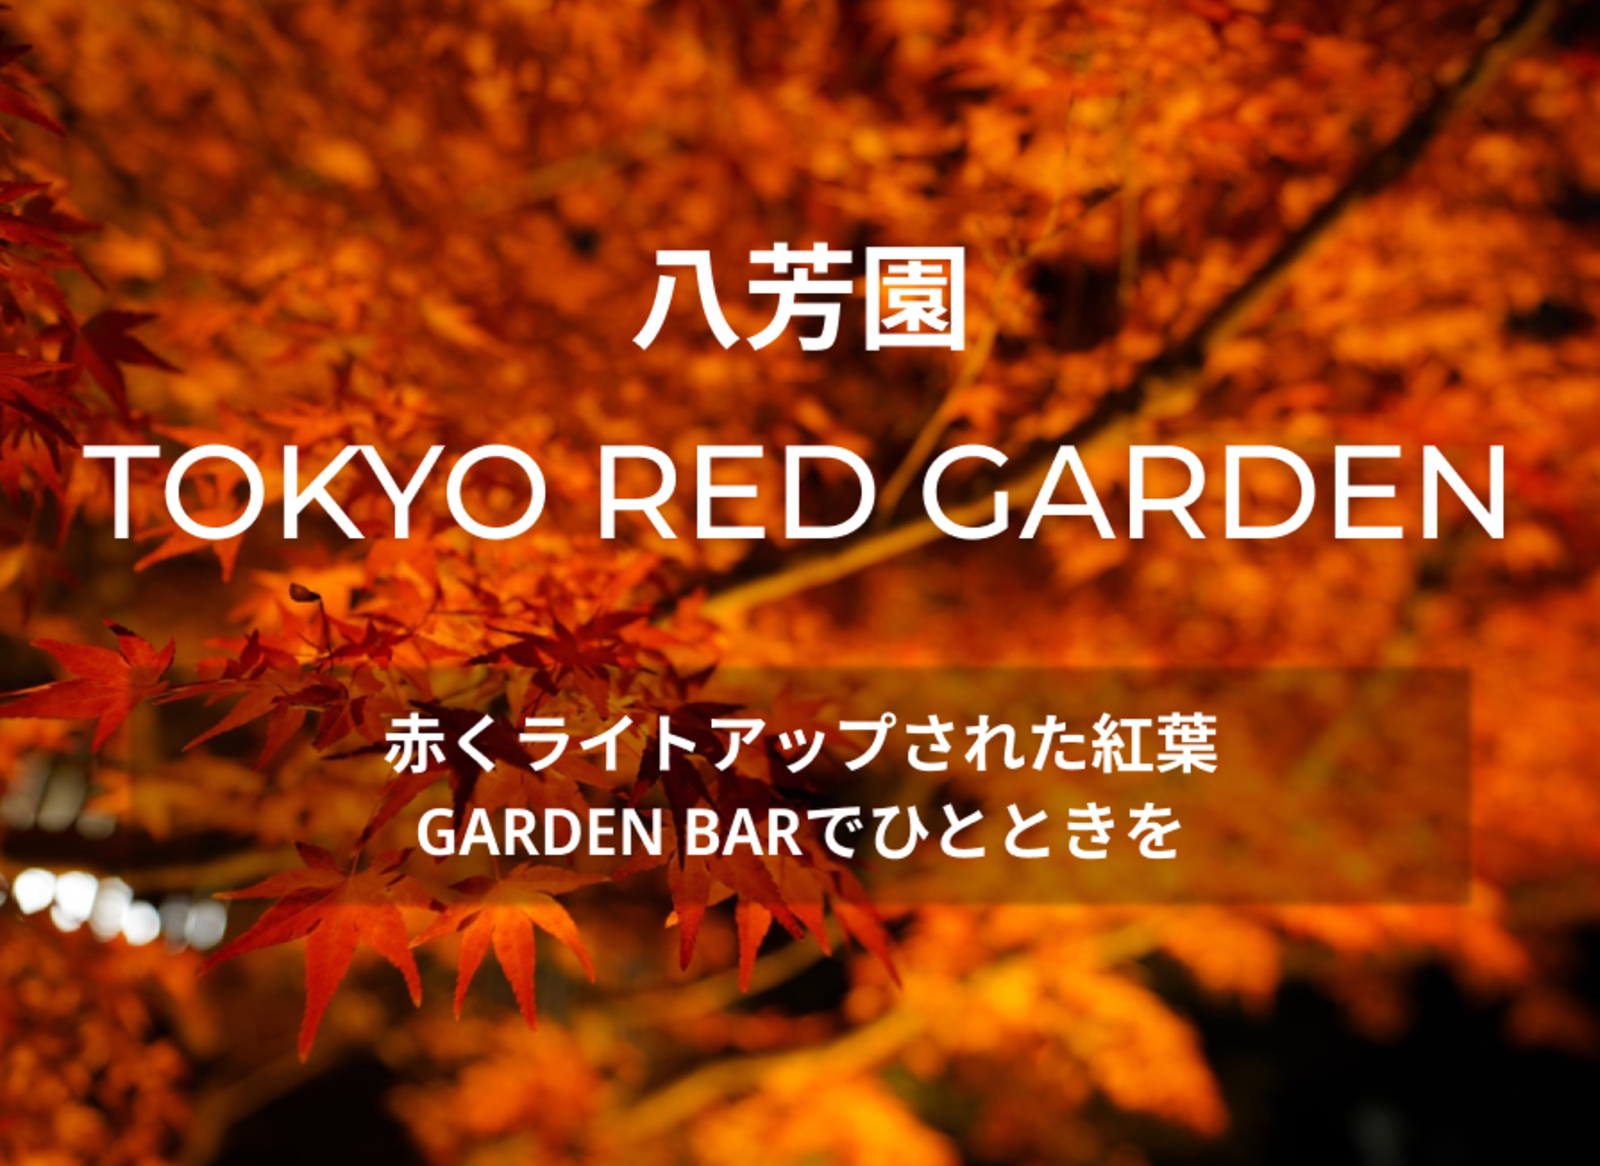 八芳園 TOKYO RED GARDENに行きましょう。赤くライトアップされた紅葉に囲まれてBARでひとときを🍁🍷